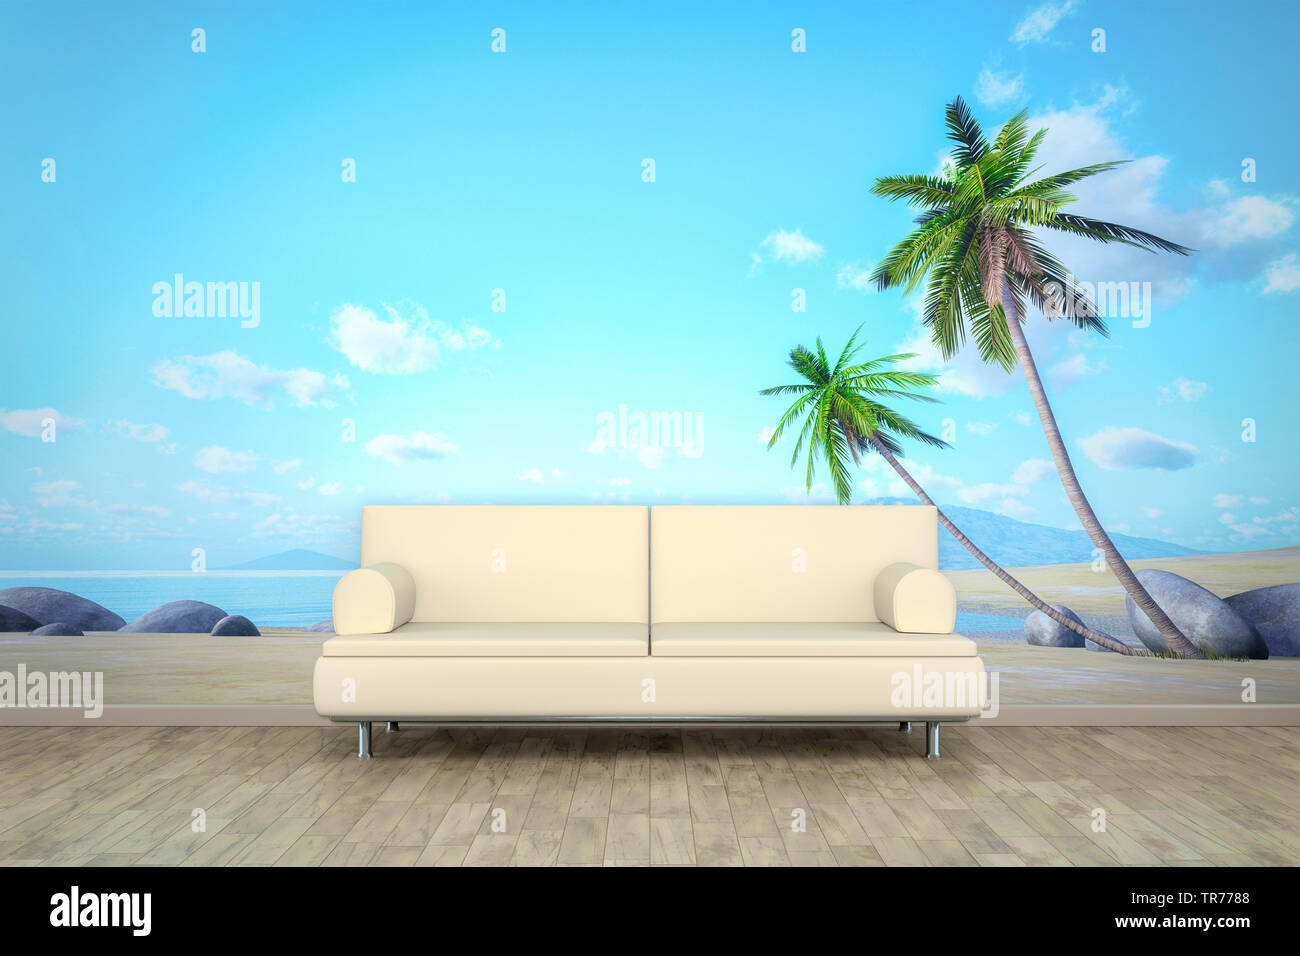 La computer grafica 3D, design di interni con divano in pelle di colore bianco contro un sfondo fotografico con spiaggia motif Foto Stock